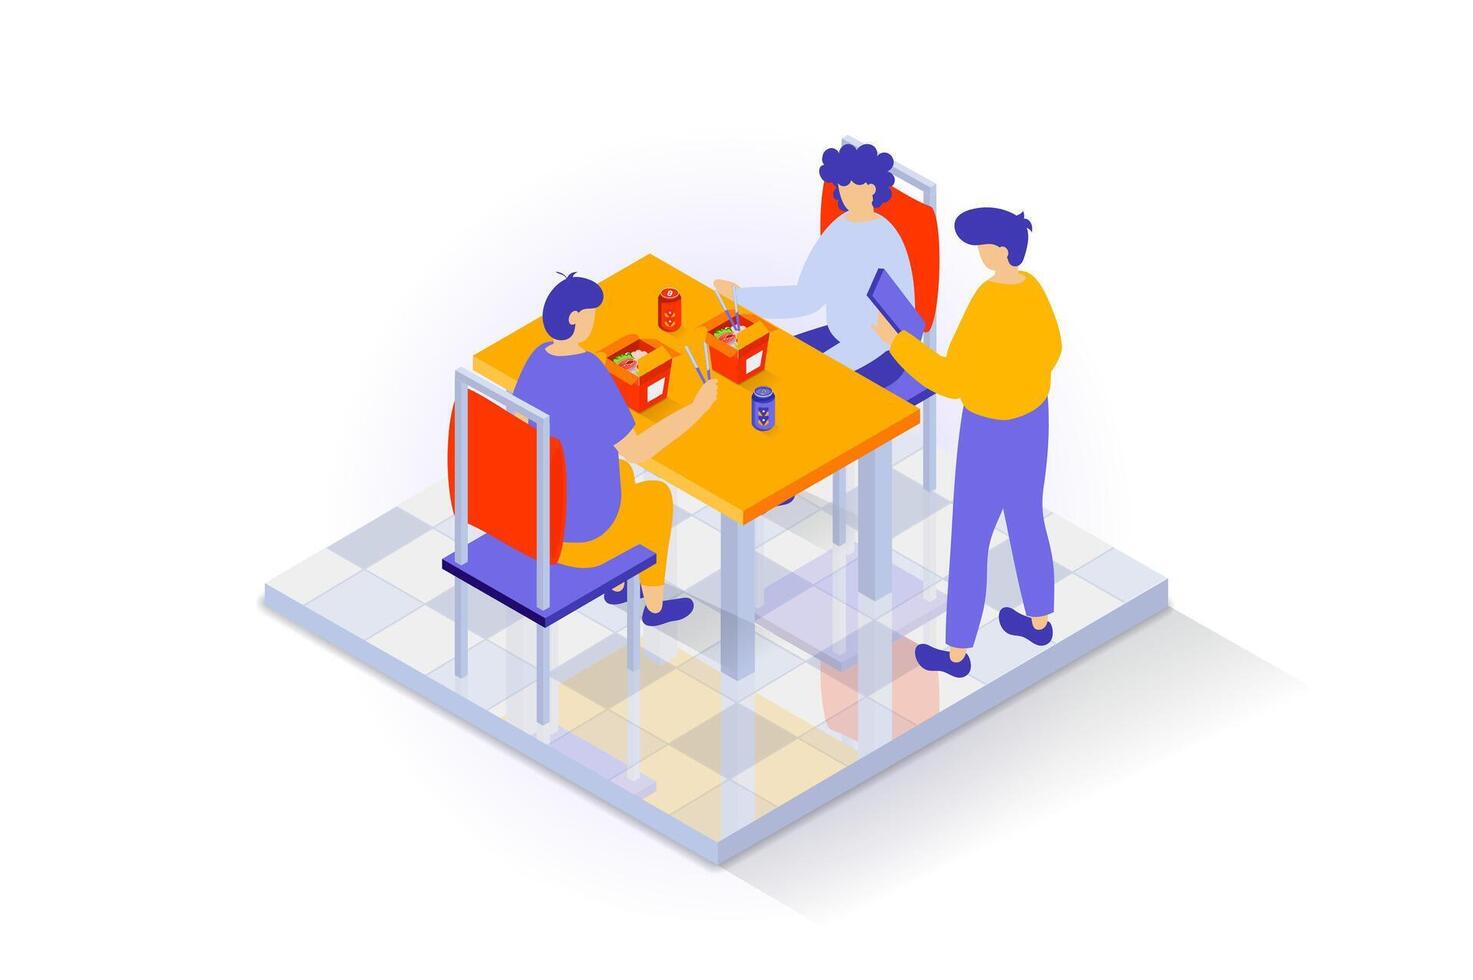 Hem interiör begrepp i 3d isometrisk design. människor i dining rum med bricka golv Sammanträde på stolar på tabell och äter snabb mat måltider. vektor illustration med isometri scen för webb grafisk